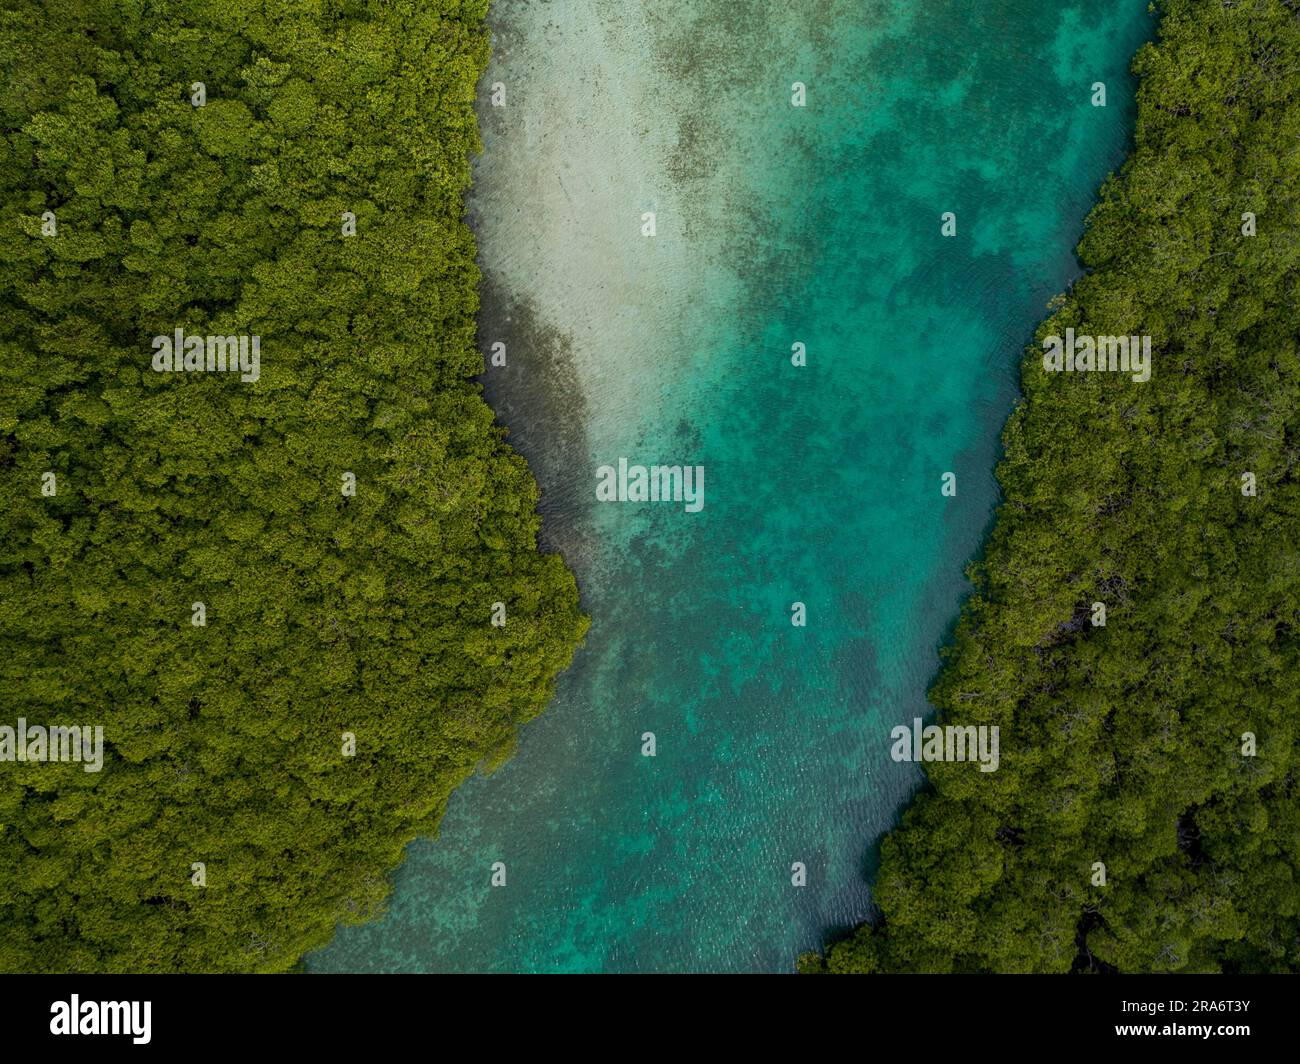 Aerial photograph of mangroves and sandbars in the Caribbean sea, Portobelo, Panama - stock photo Stock Photo